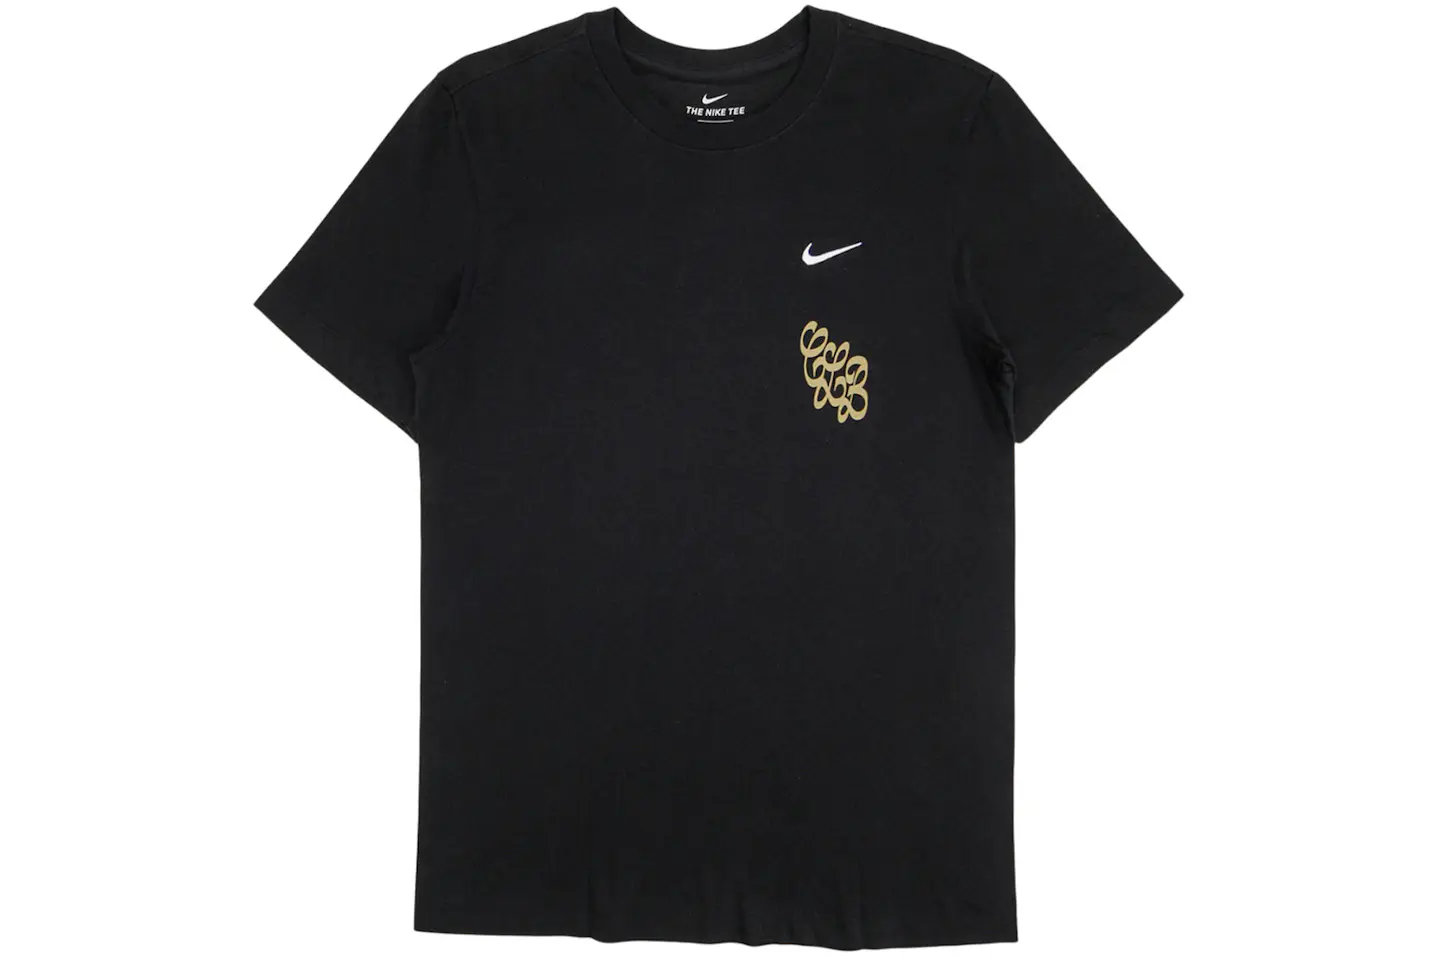 Nike x Drake Certified Lover Boy Rose T-Shirt Black Men's - FW20 - US